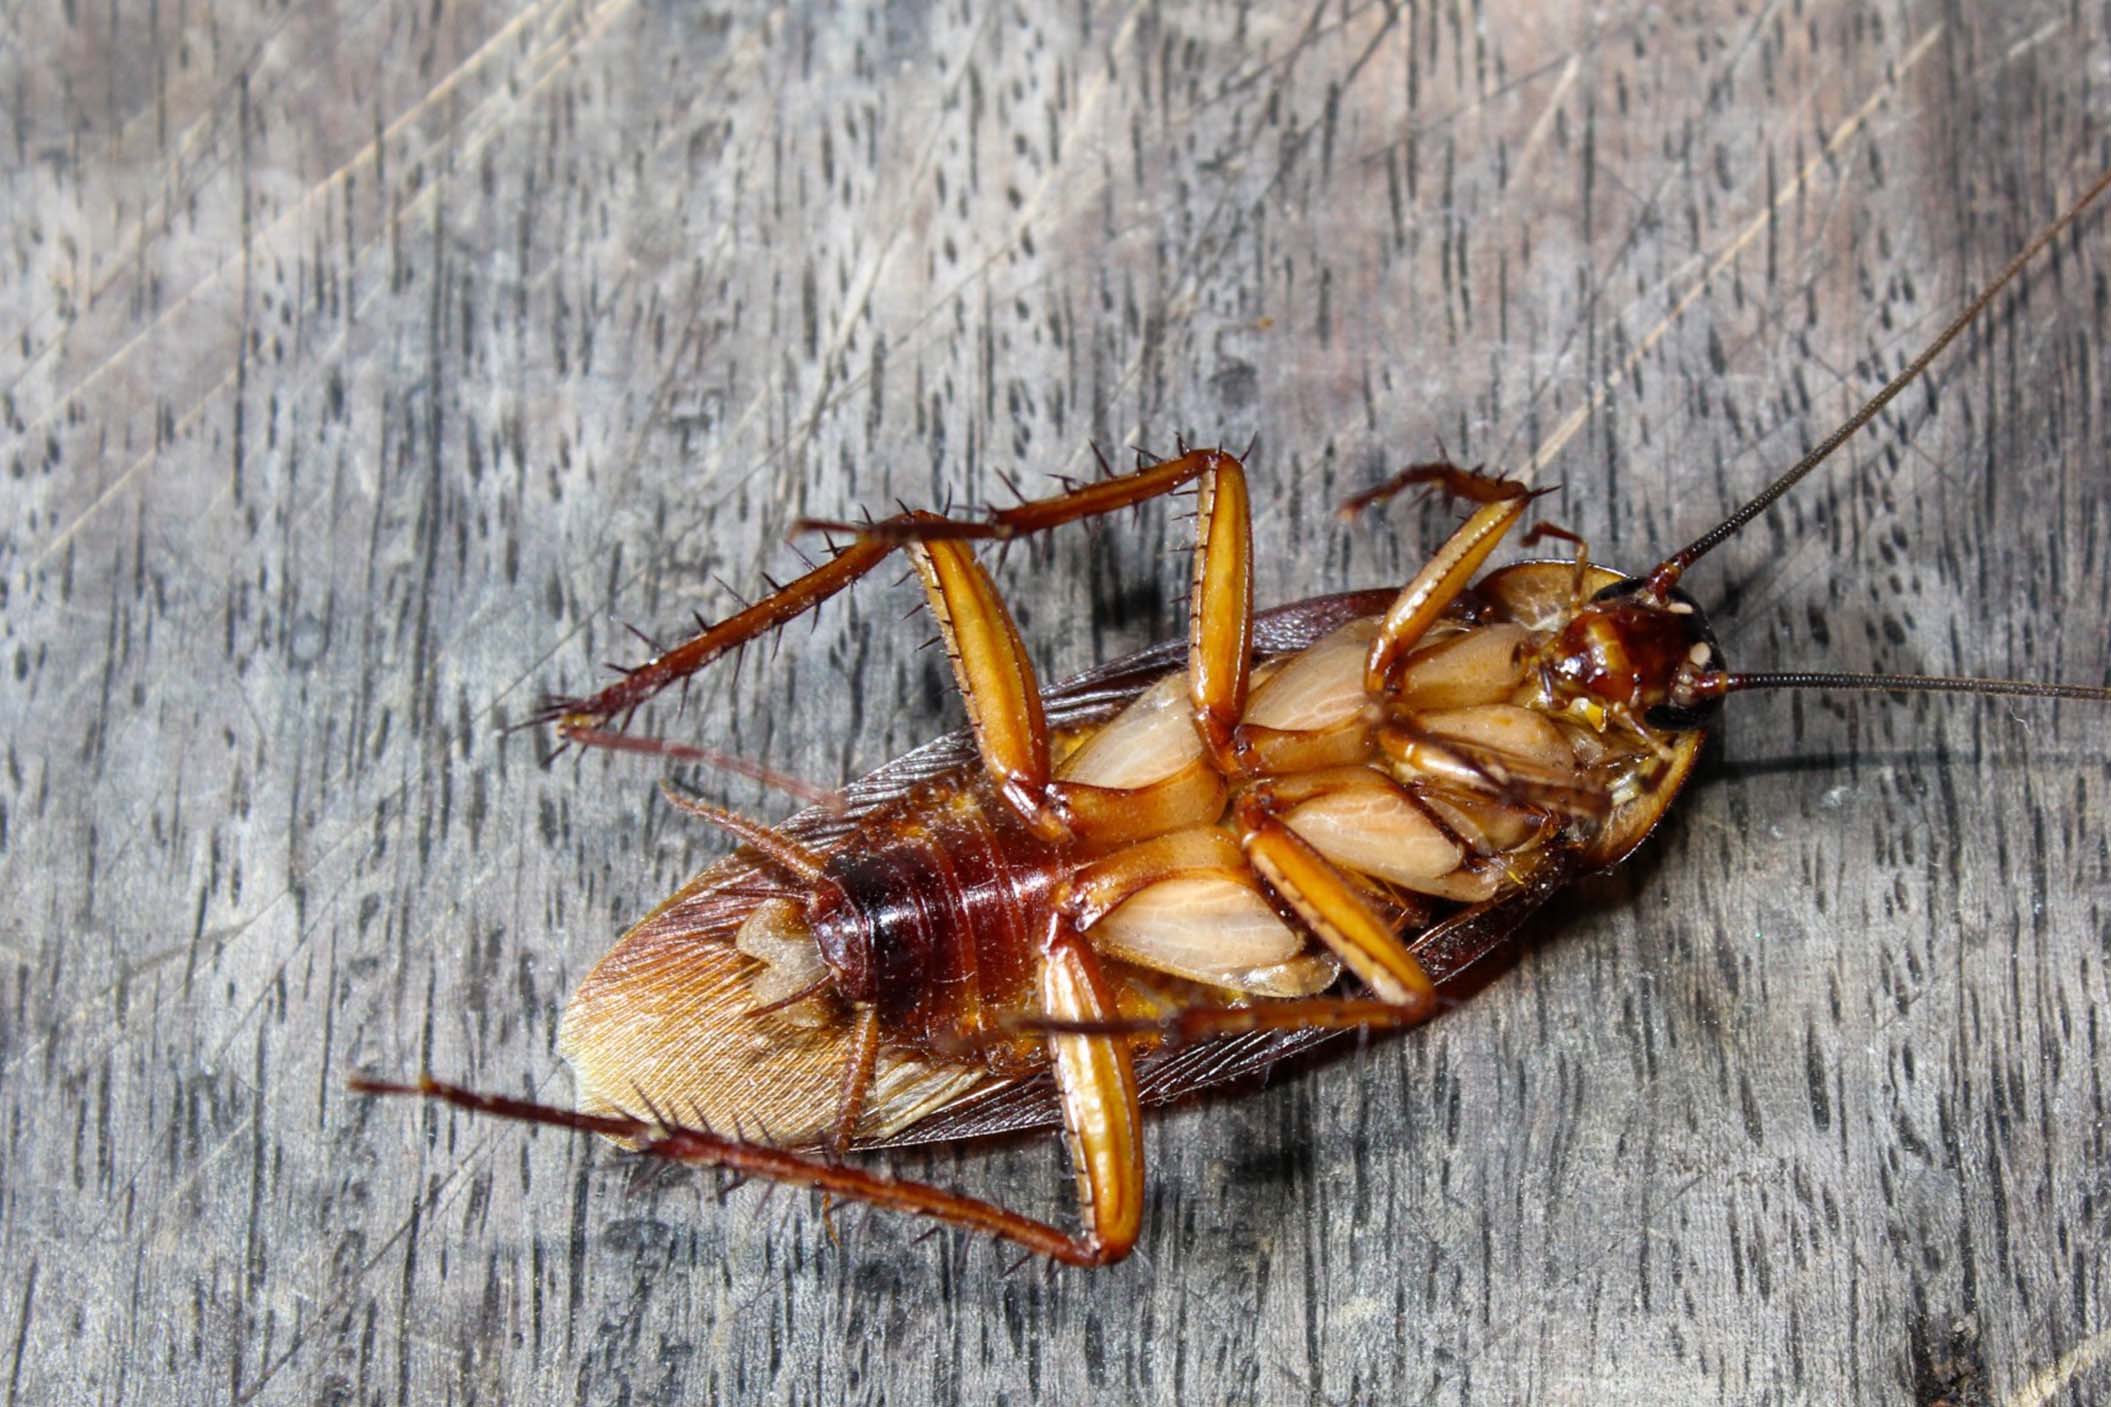 dead cockroach pn a wooden floor